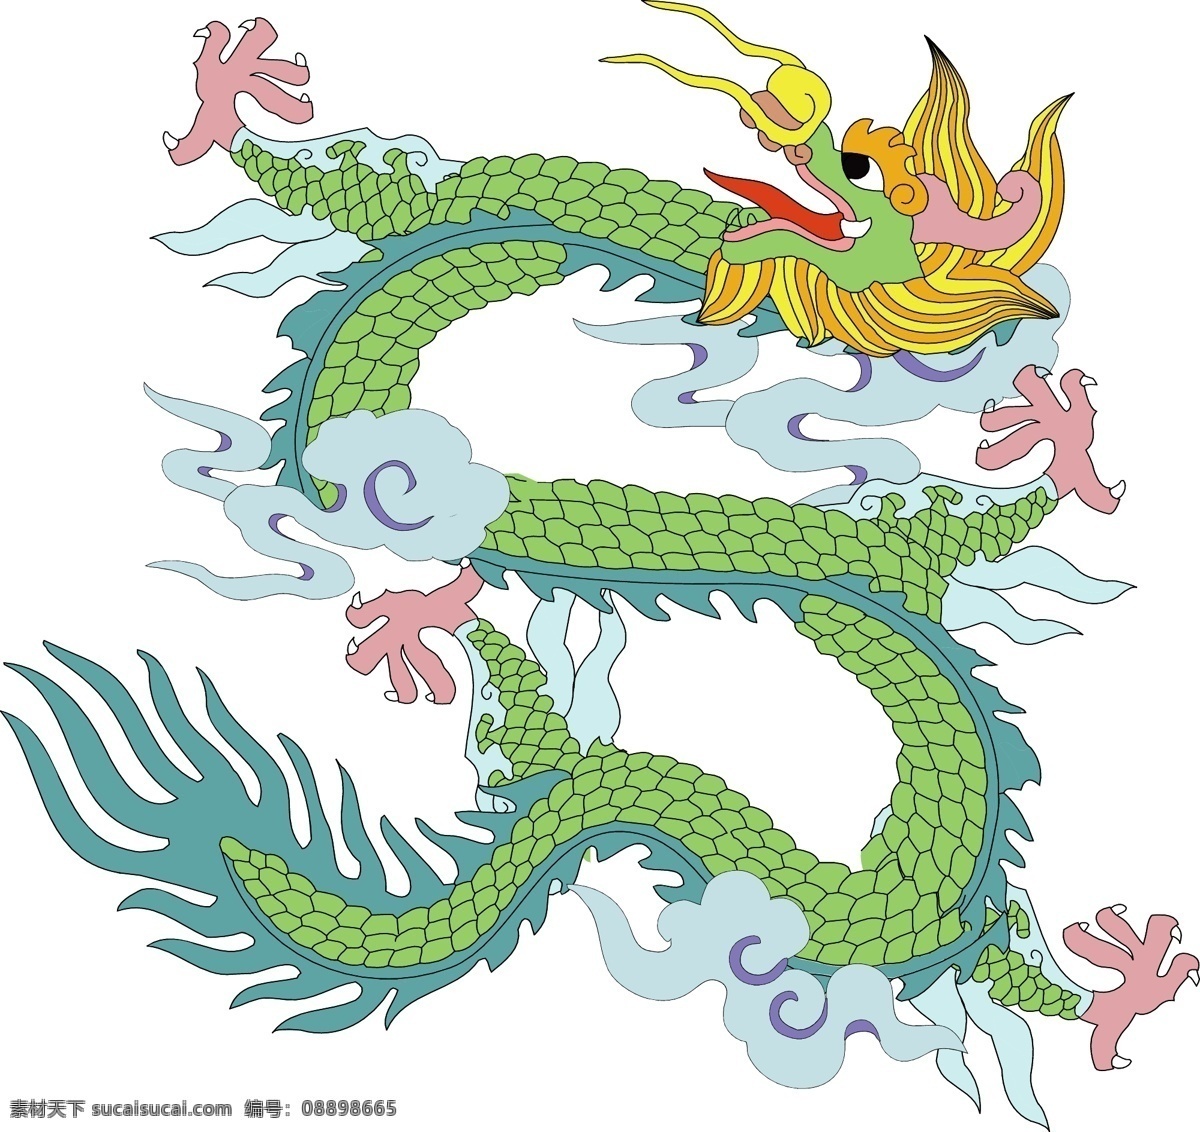 绿色飞龙 空中飞龙 粉爪金毛 云朵 中国 传统 龙凤 图案 传统文化 文化艺术 矢量